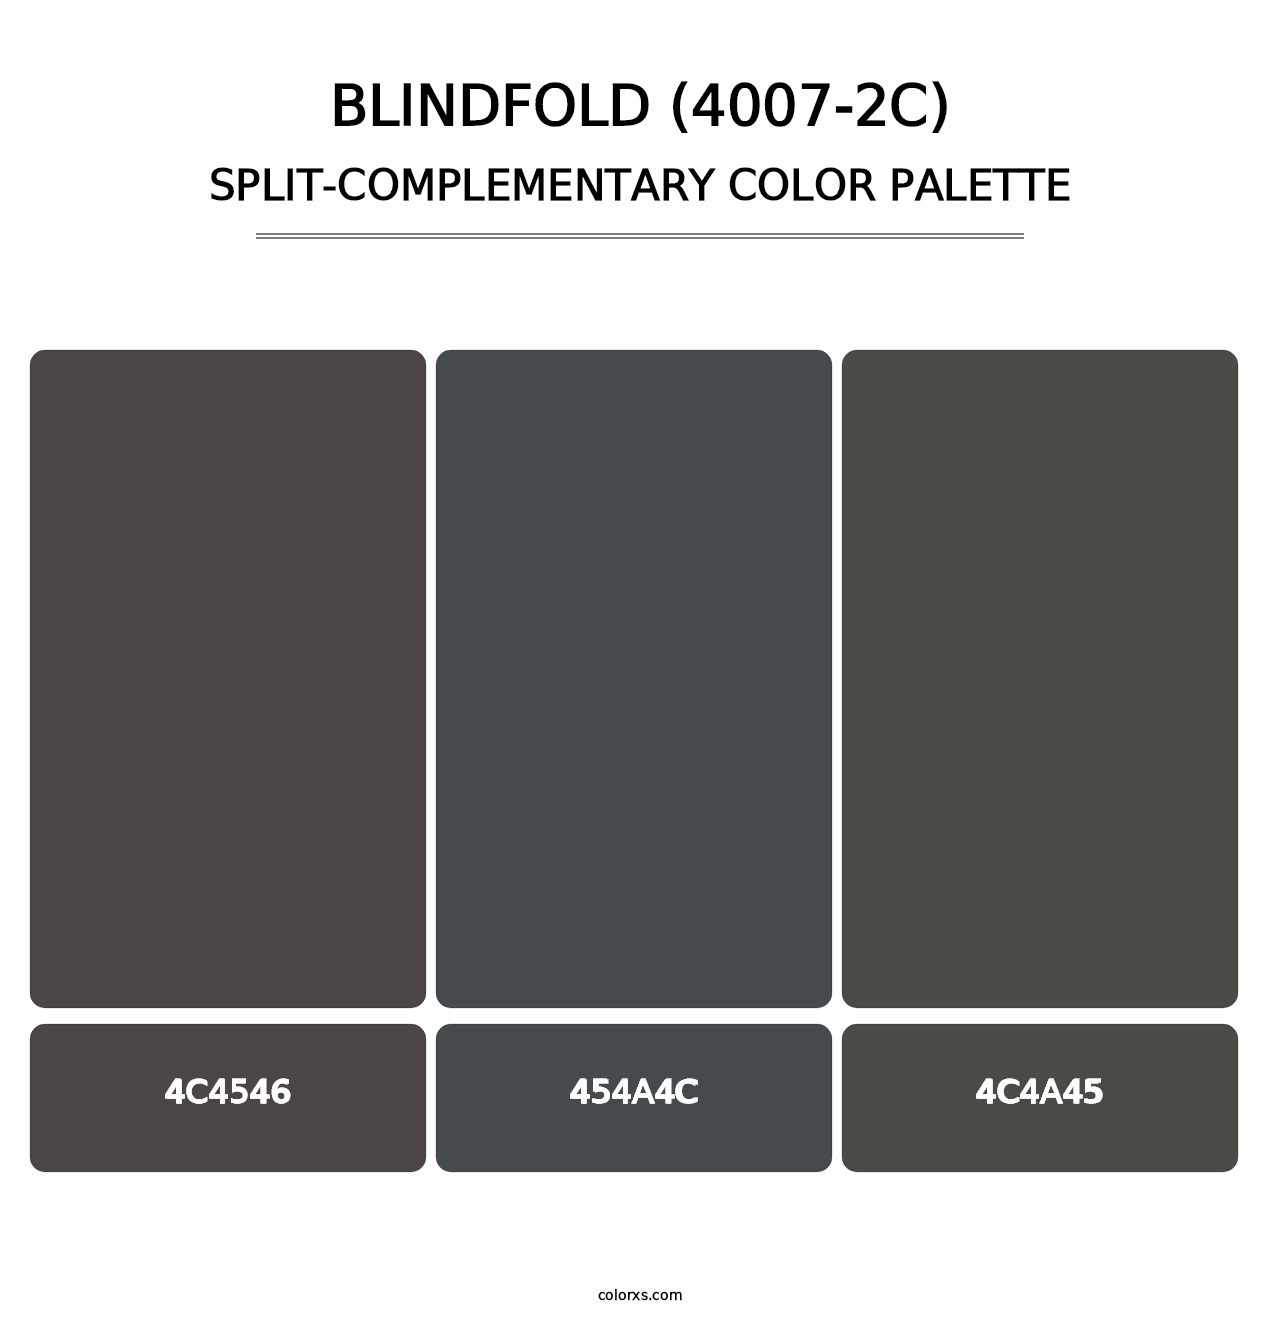 Blindfold (4007-2C) - Split-Complementary Color Palette